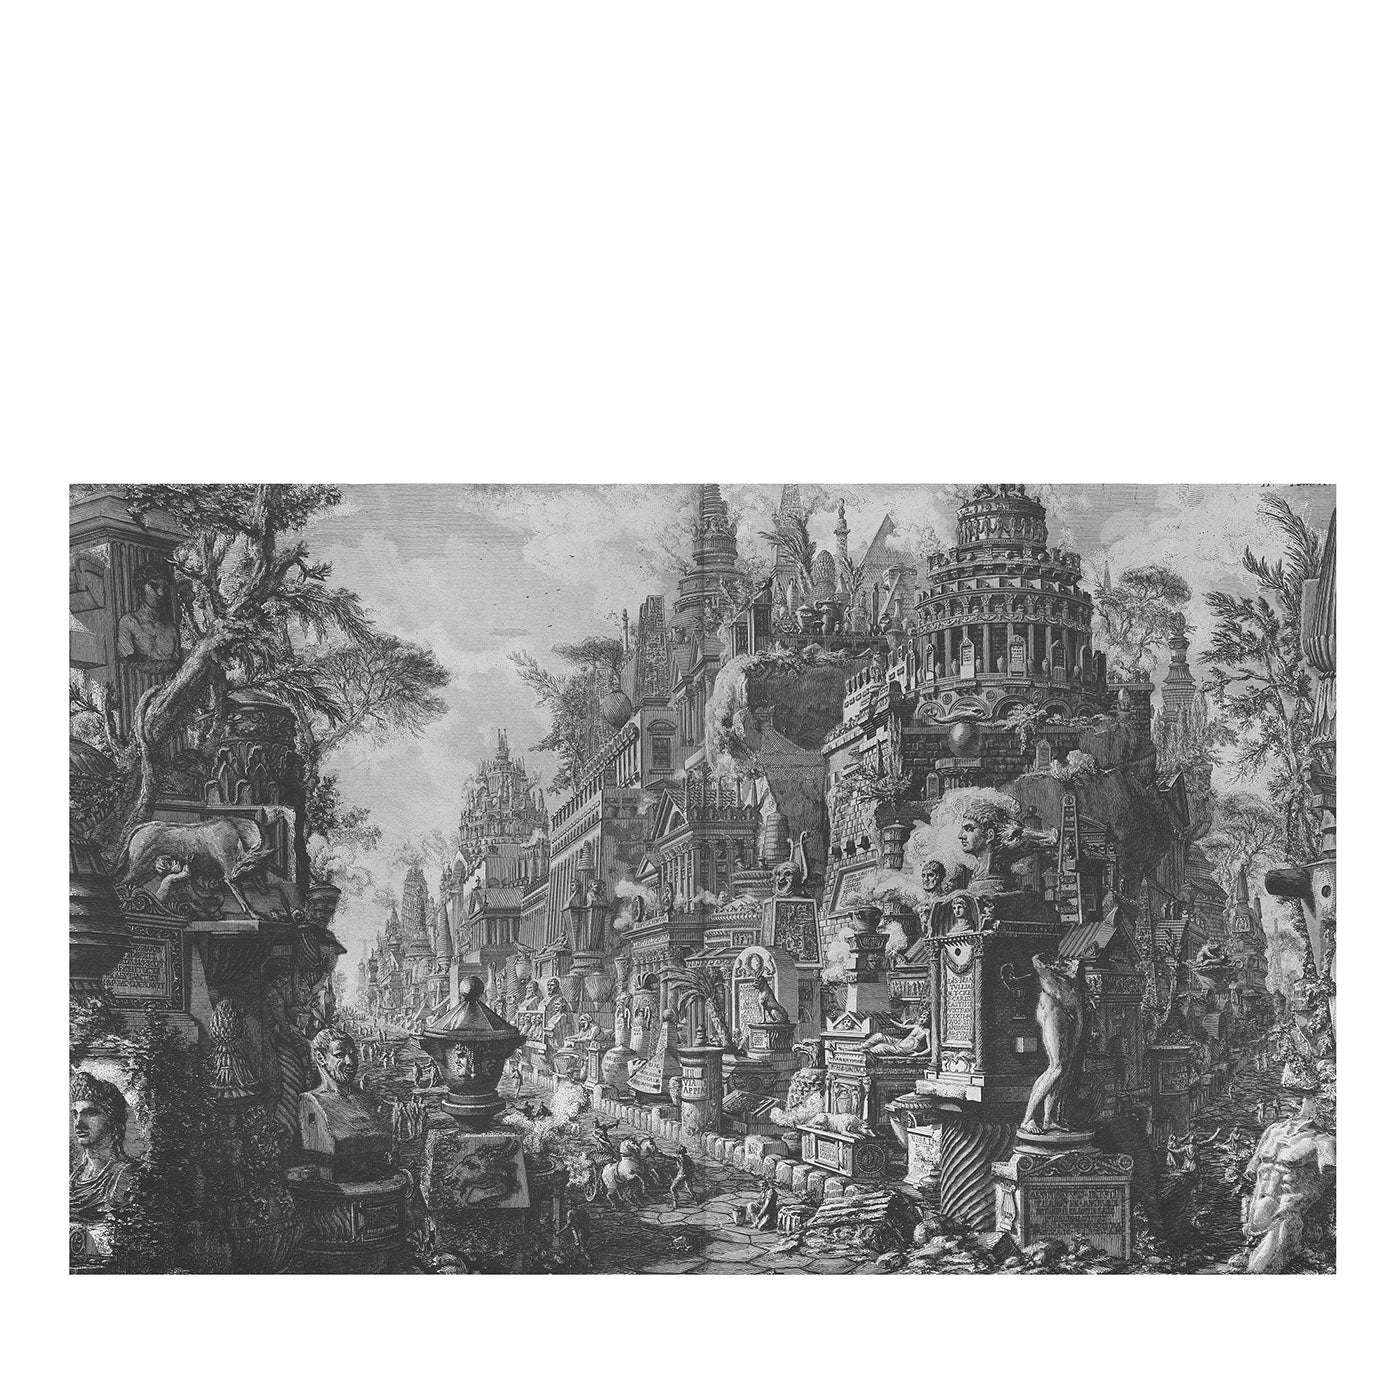 Parlanti Ruine Piranesi 22 Wallpaper - Main view